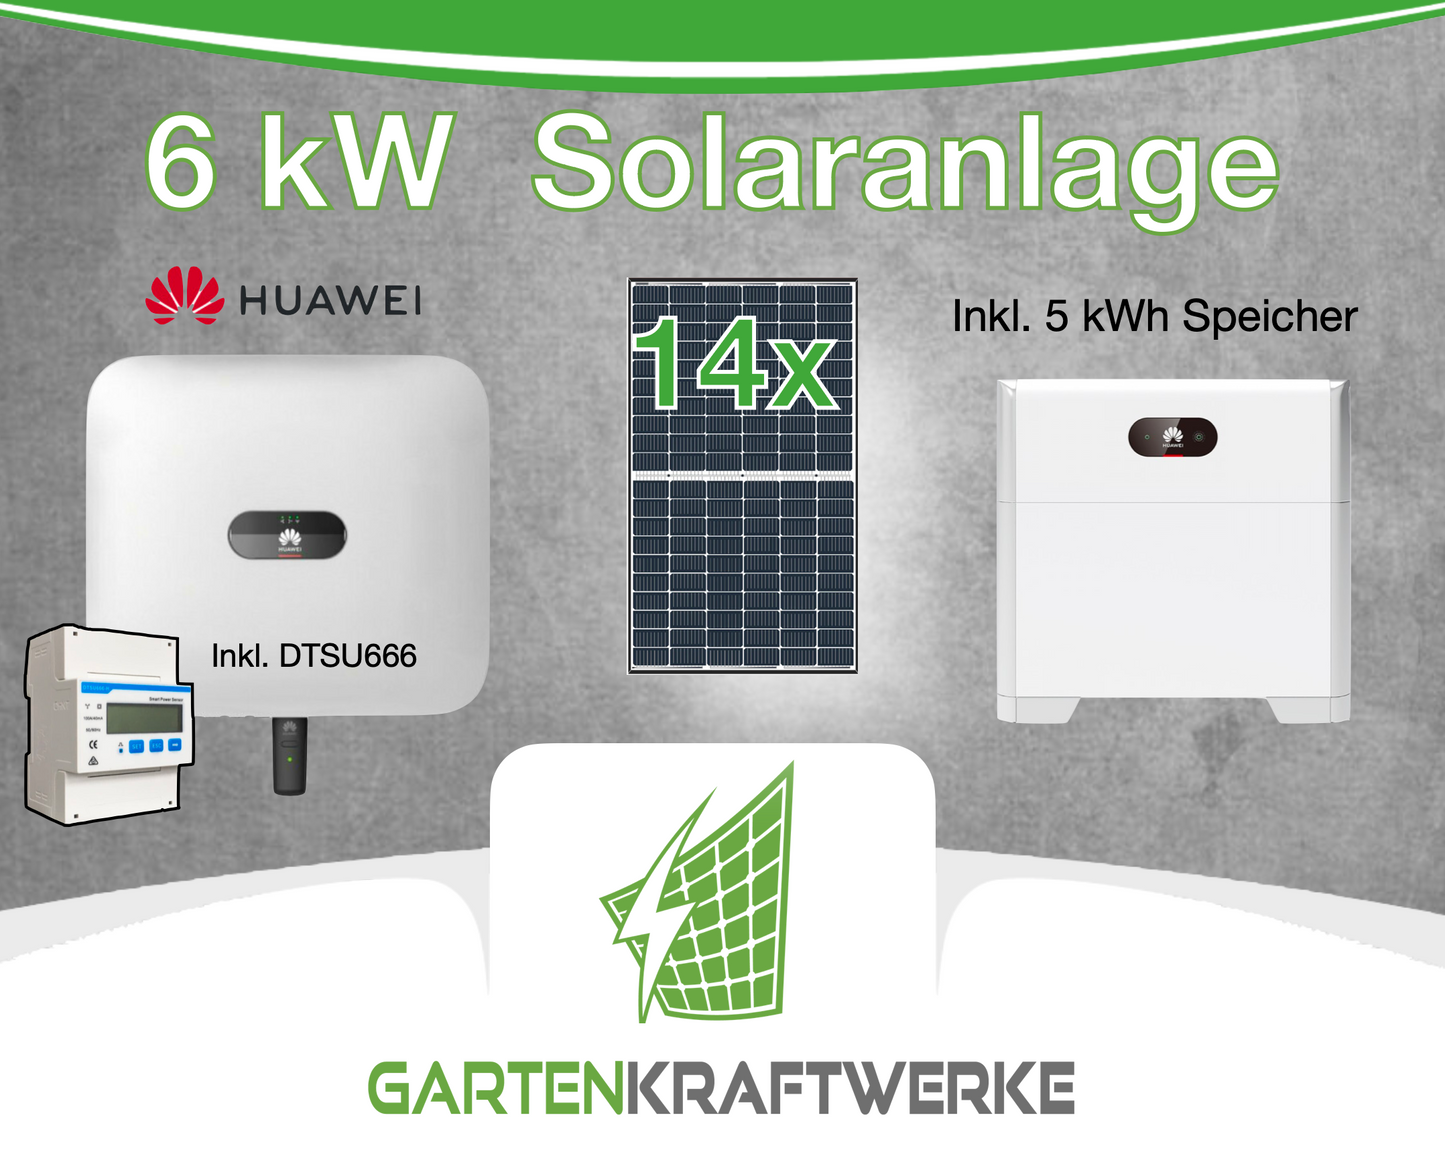 6 kw Solaranlage Komplettset mit 5kwh Speicher Huawei mit 14 Module Trina 435 Watt